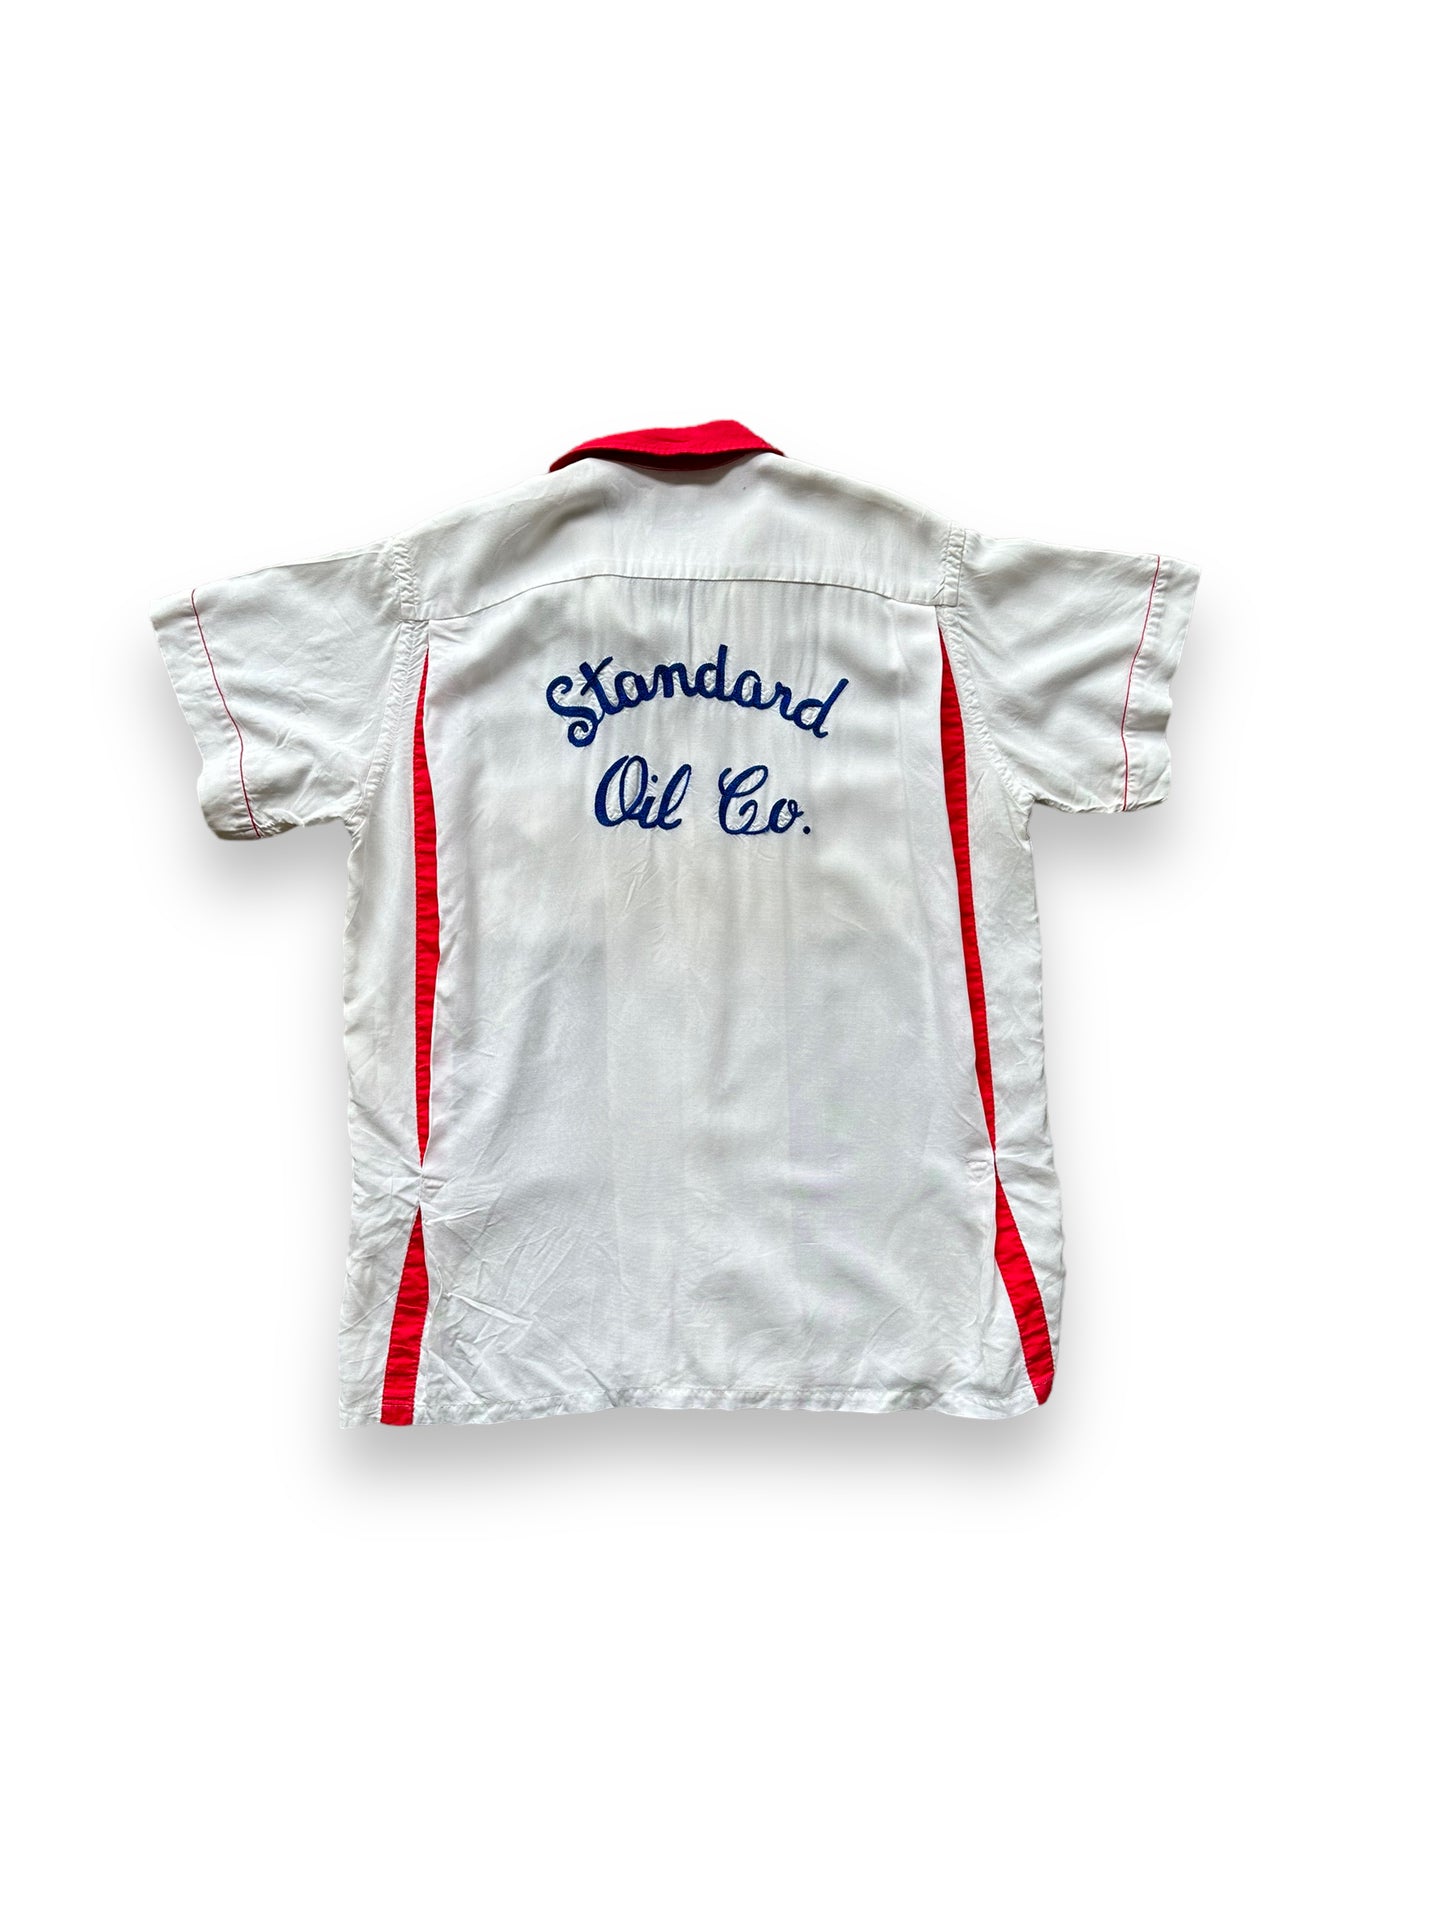 Back of Vintage "Standard Oil Co." Chainstitched Bowling Shirt SZ M | Vintage Bowling Shirt Seattle | Barn Owl Vintage Seattle